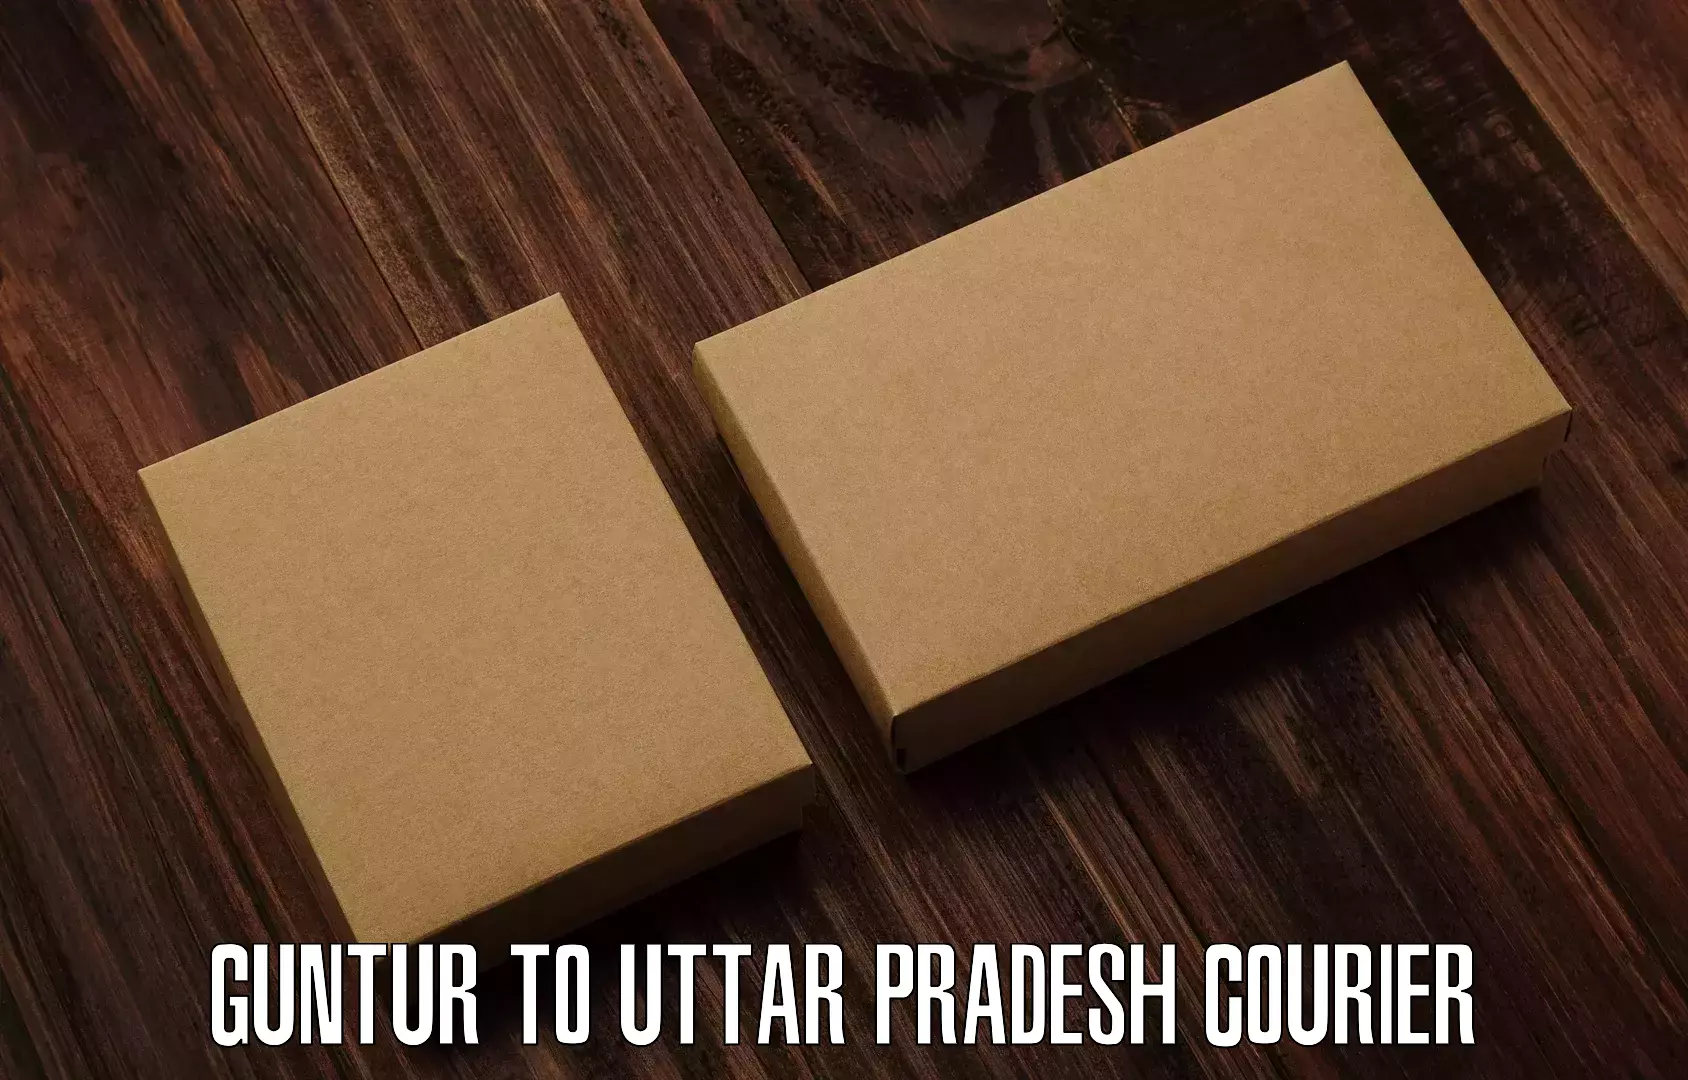 Subscription-based courier in Guntur to Nariwari